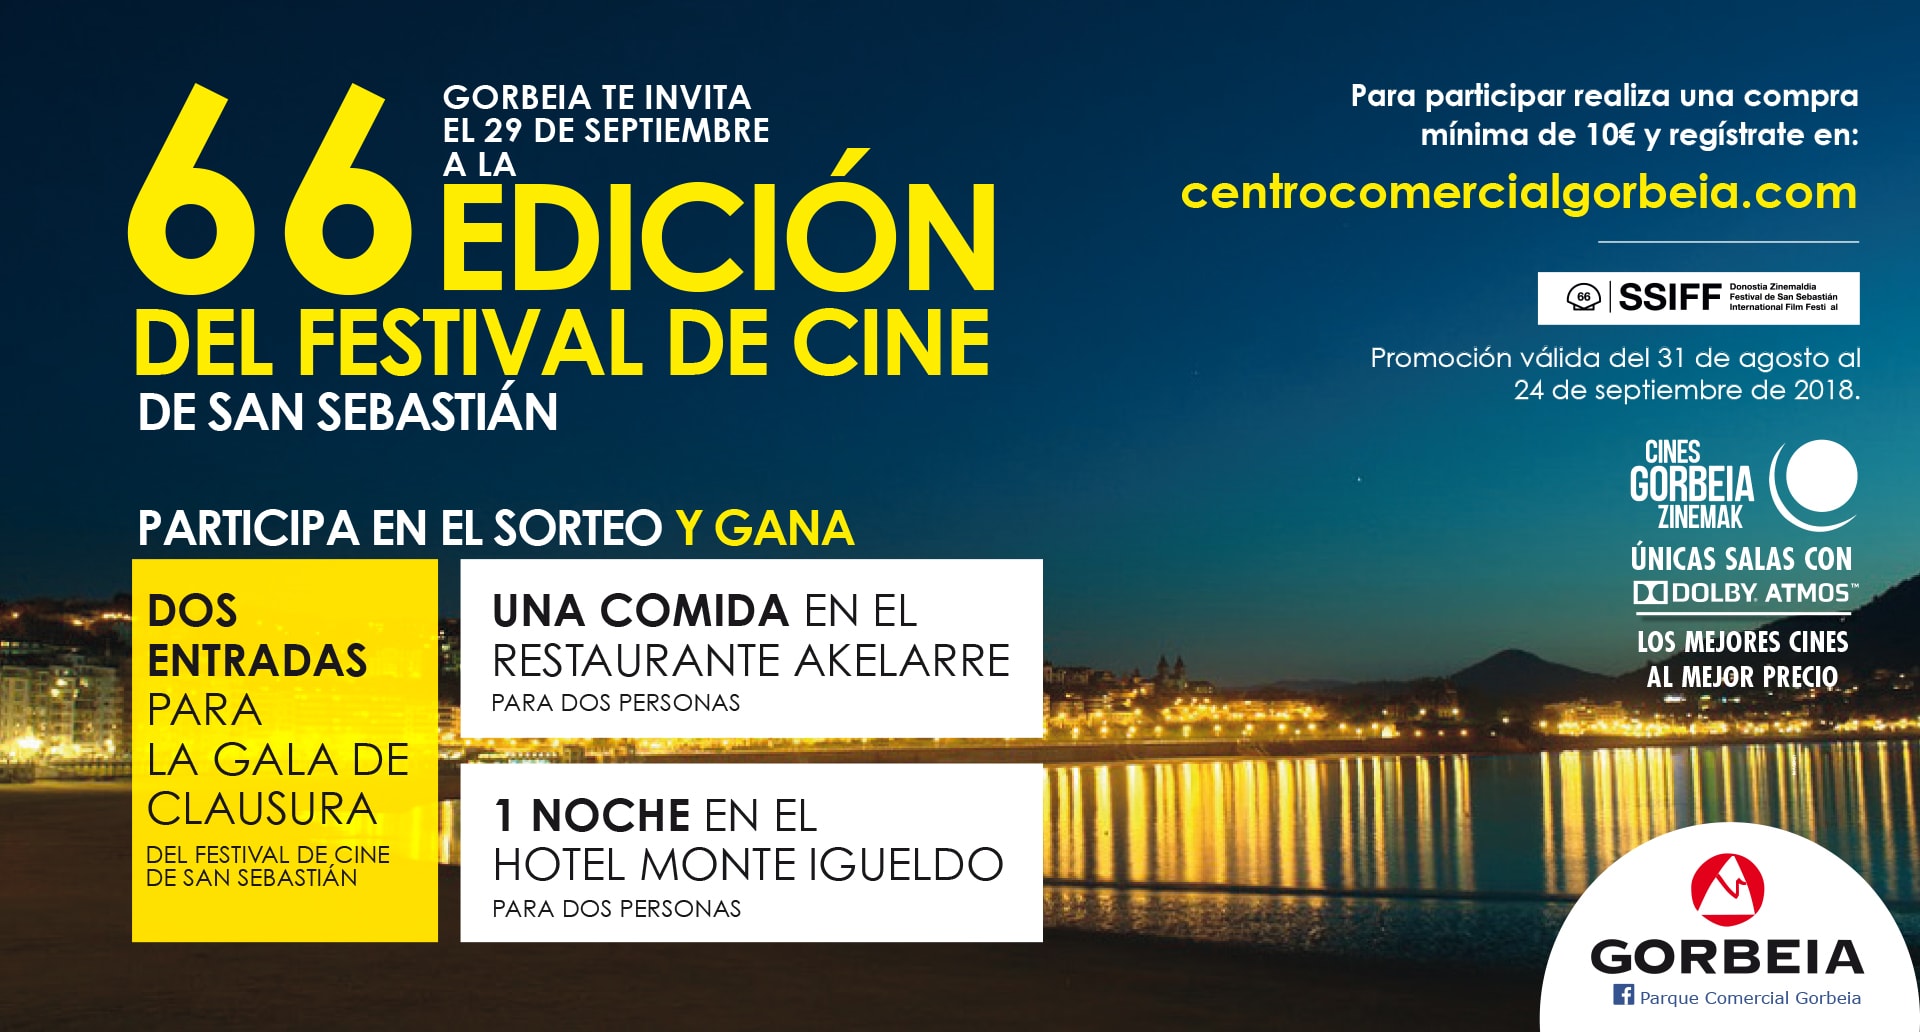 Gorbeia te invita a la 66 Edición del Festival de Cine de San Sebastián